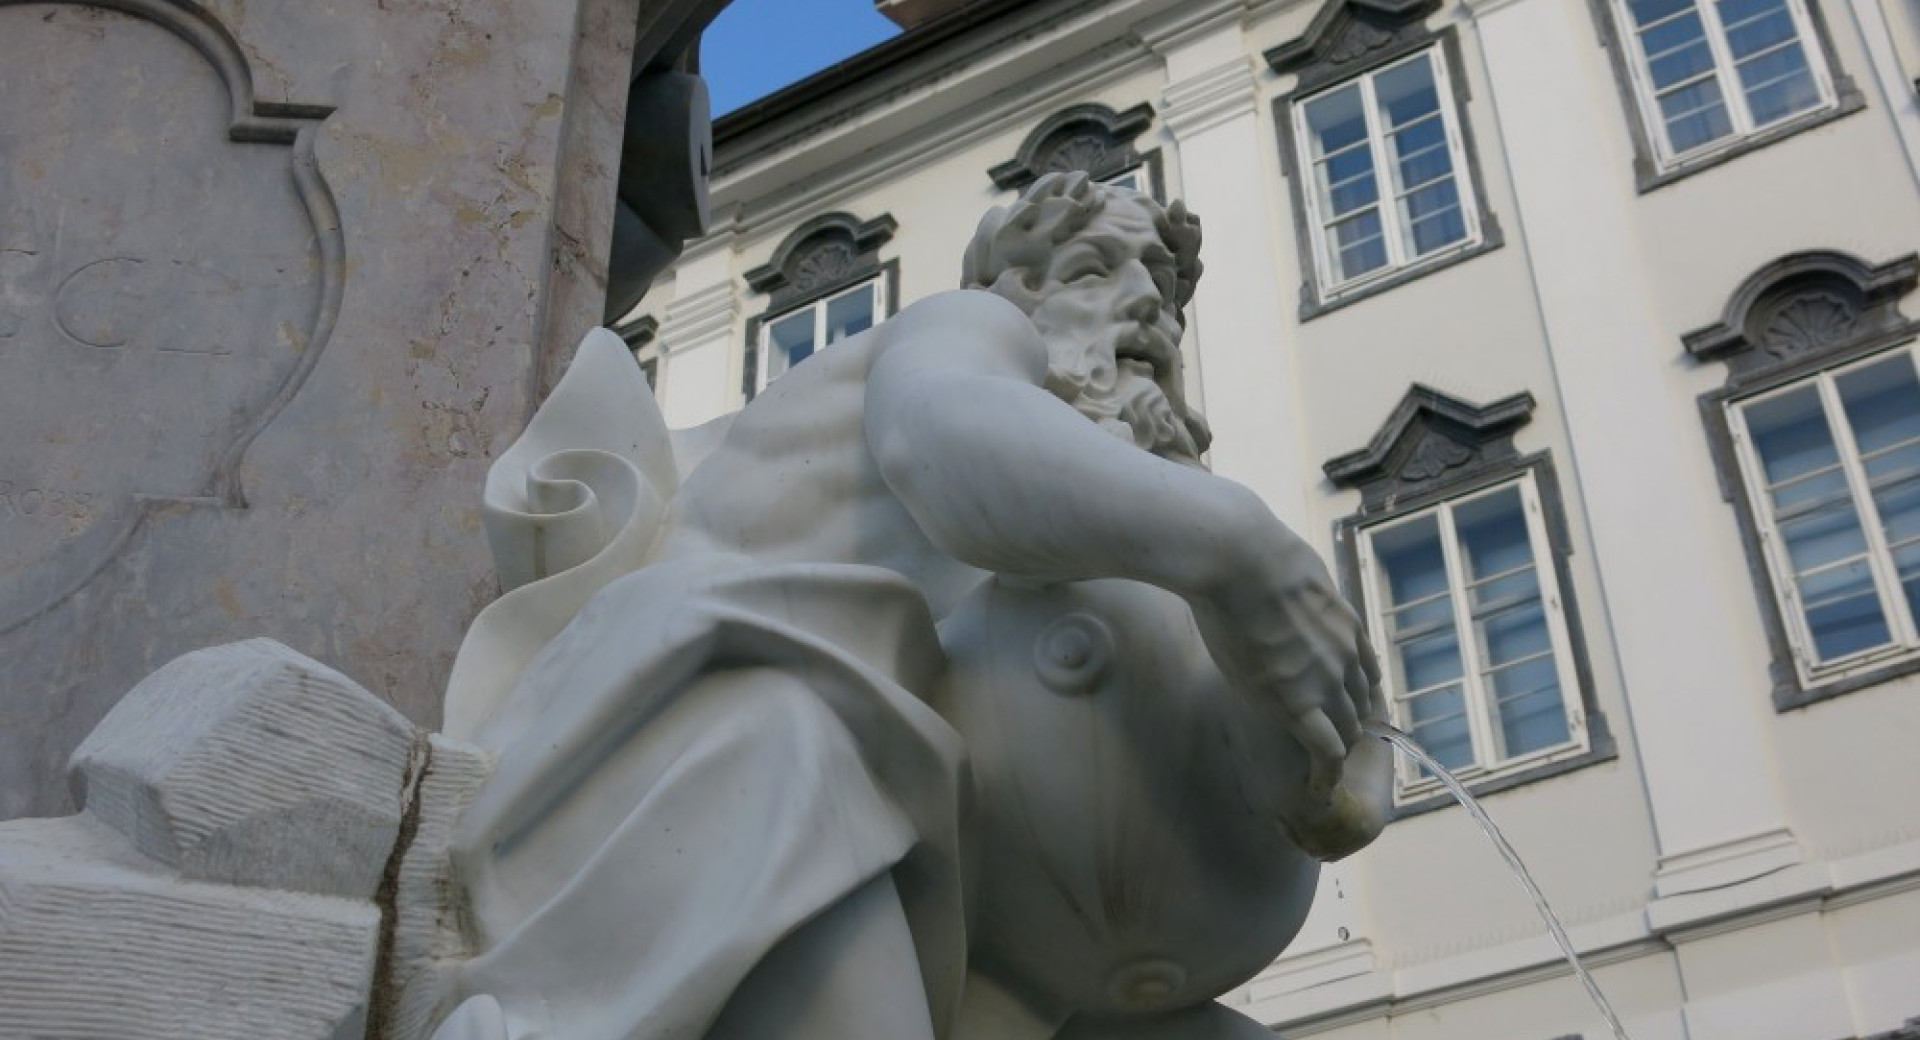 Kip moškega v mestu